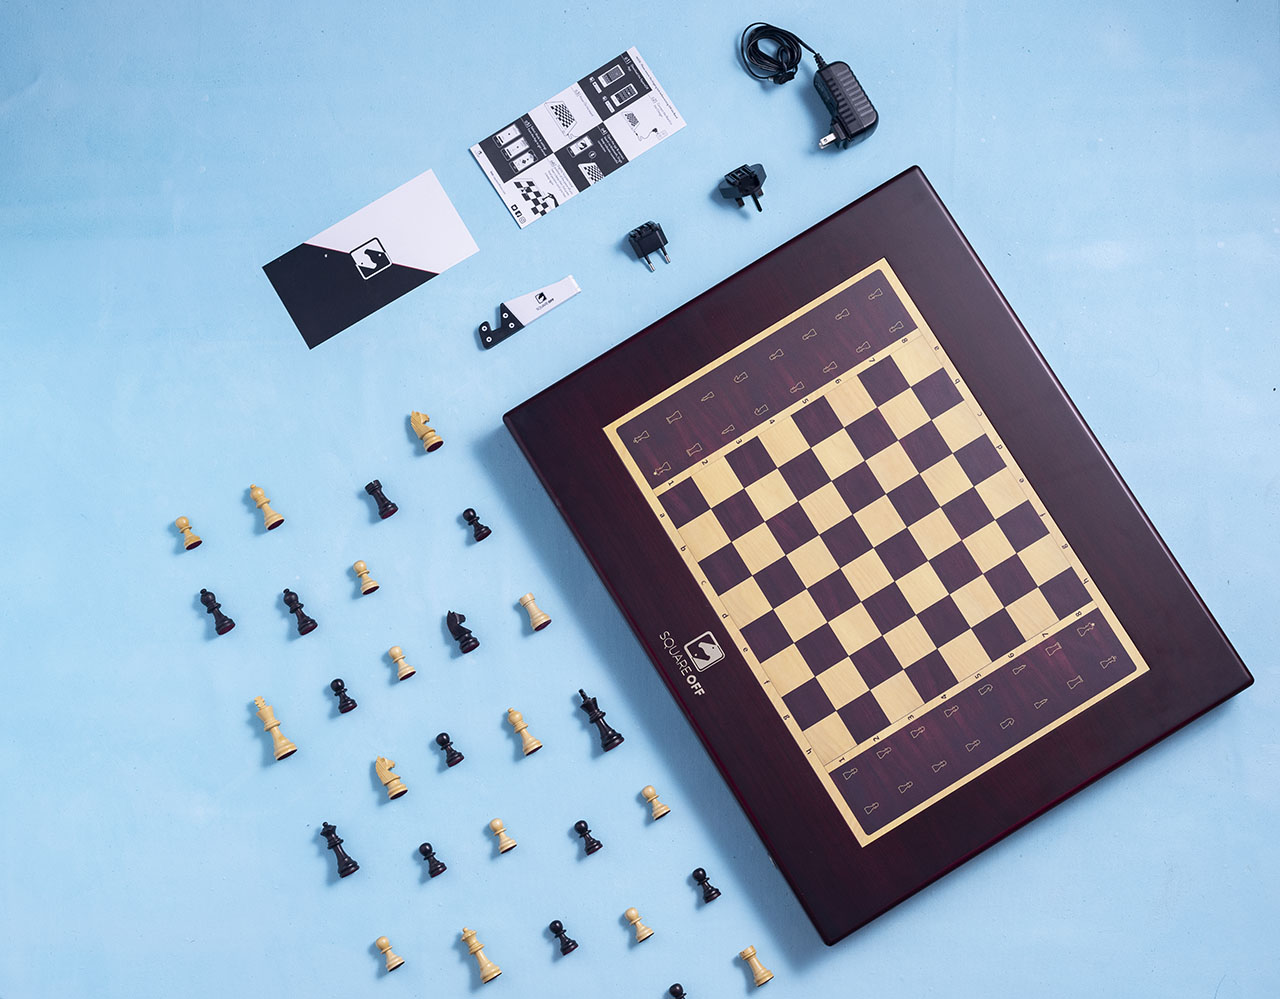 O tabuleiro de xadrez do futuro permite que você mexa as peças sem tocá-las